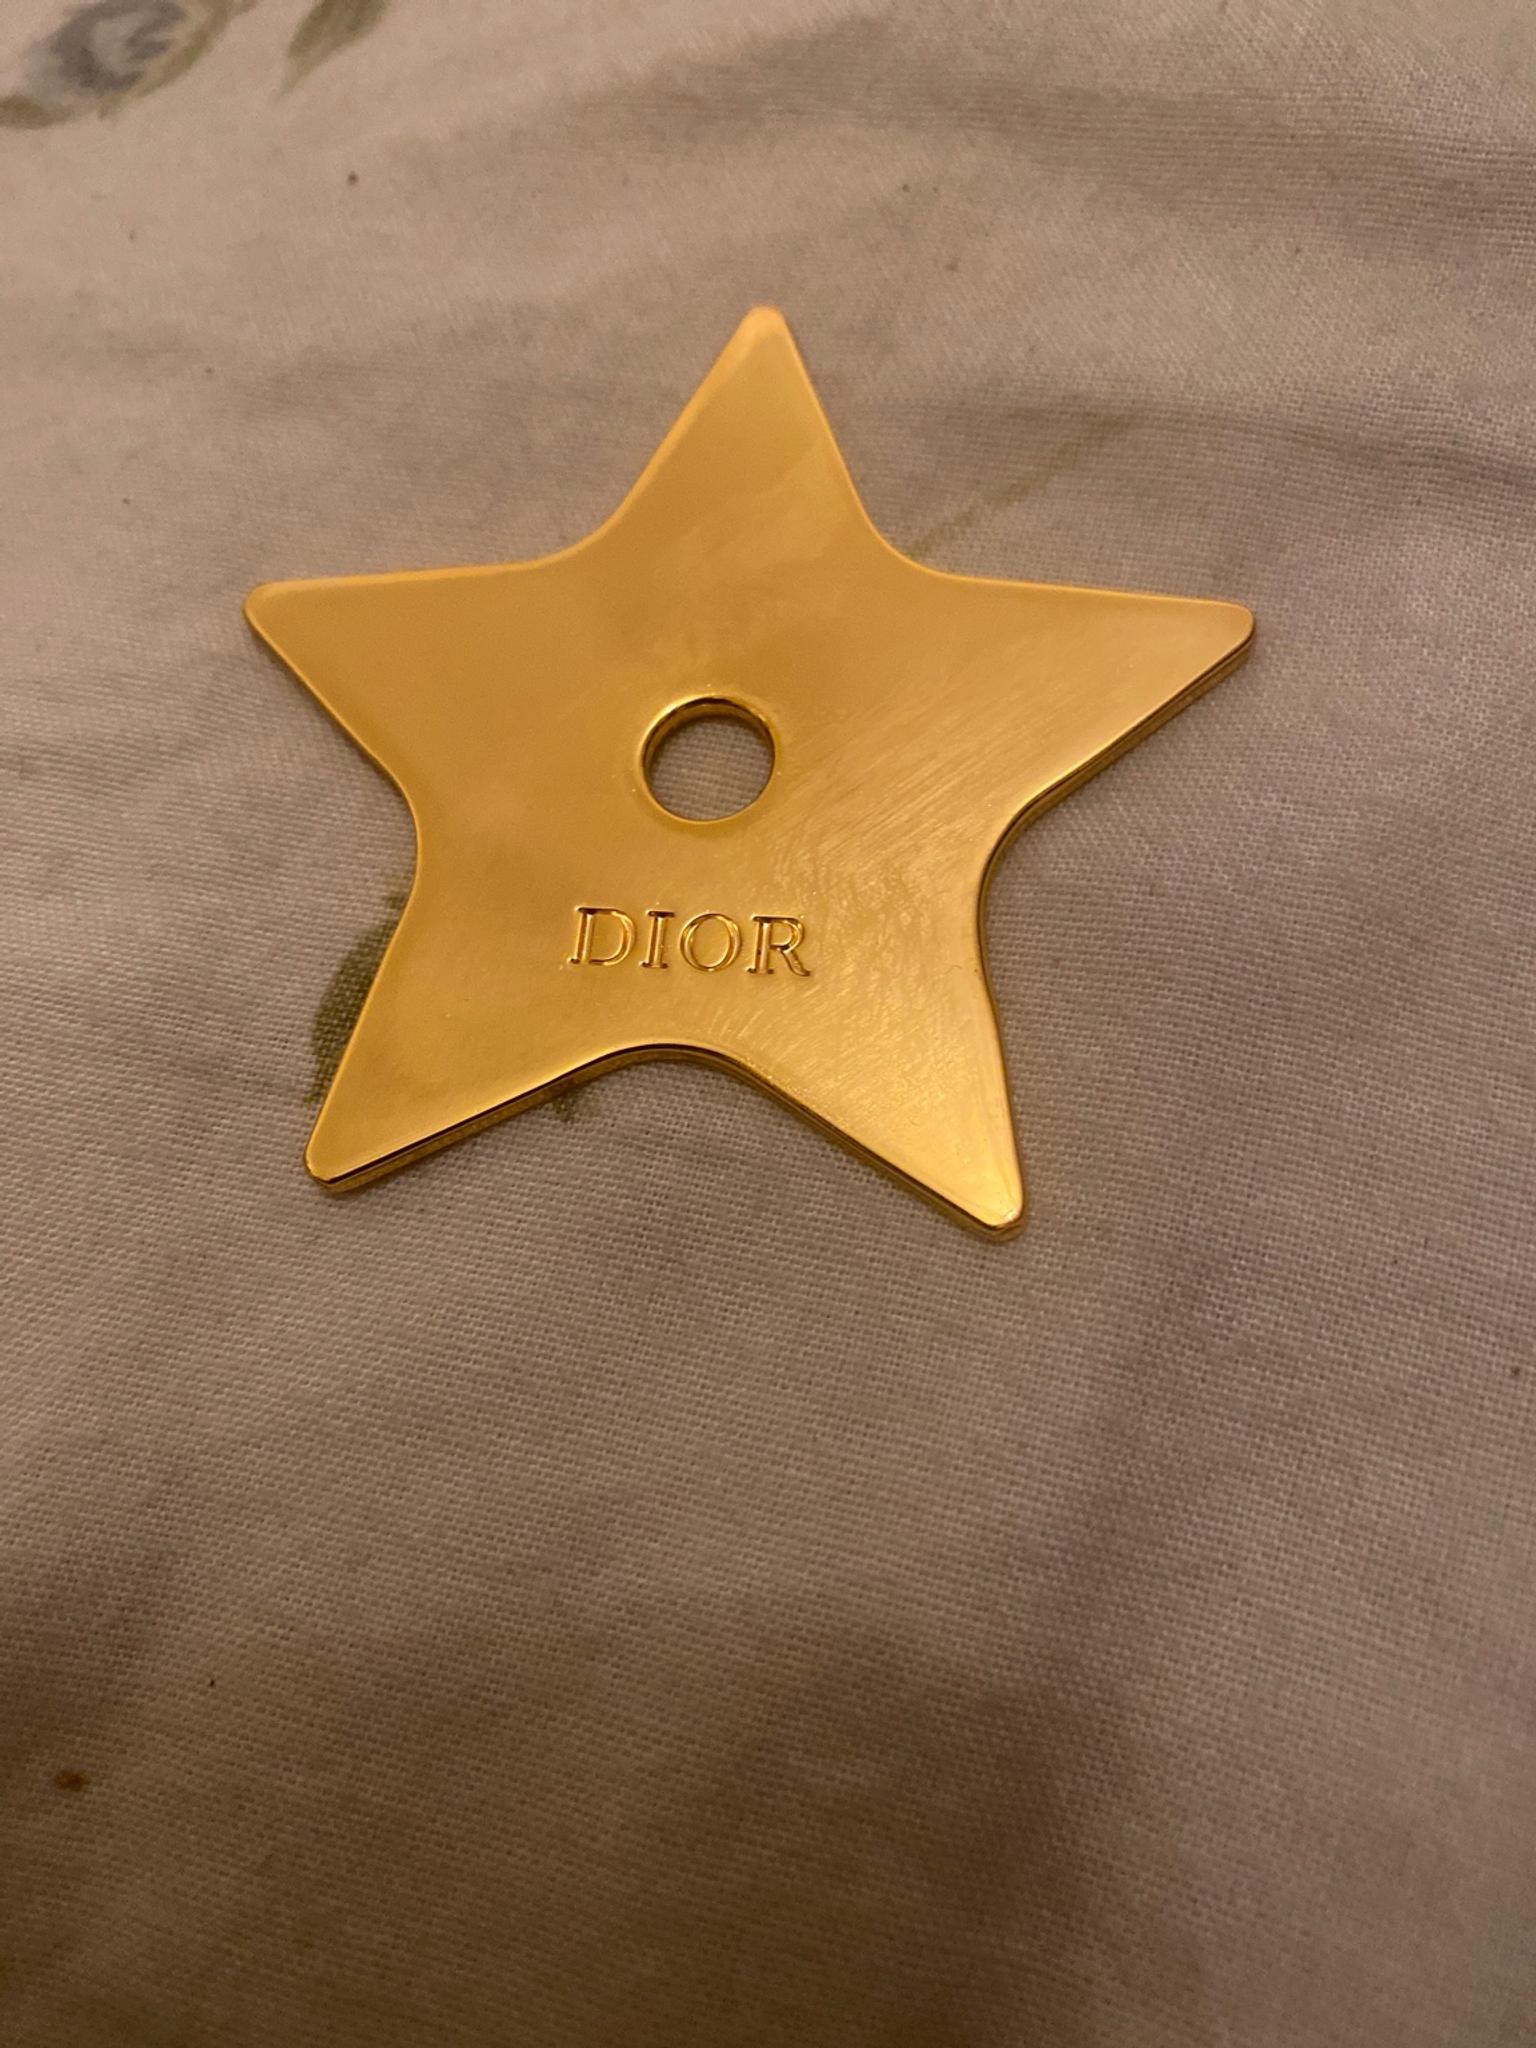 dior star